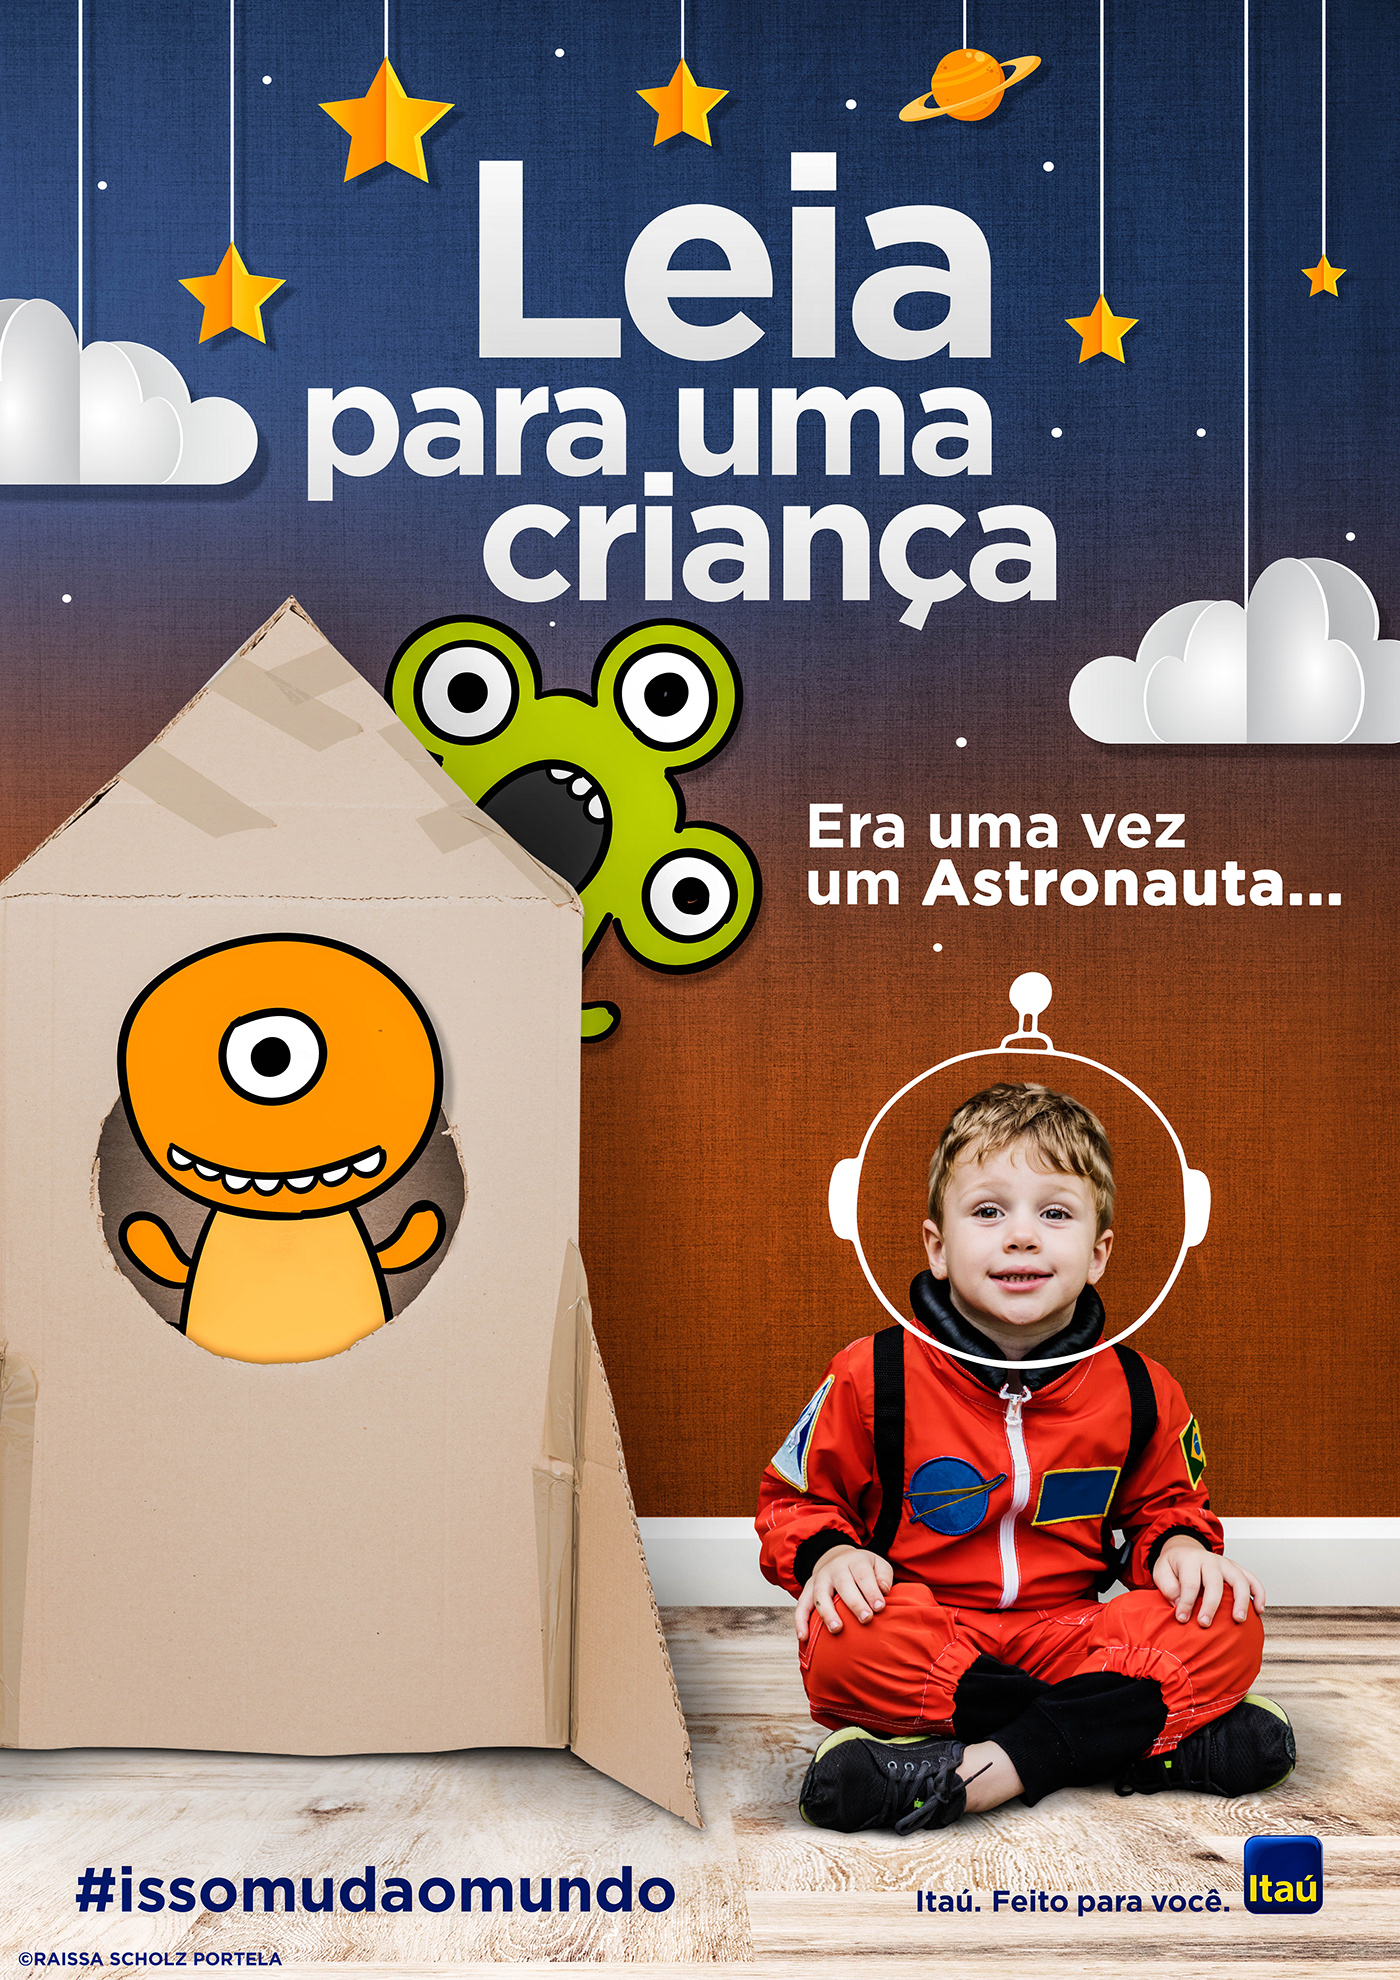 Itaú Leitura imaginação criança conto campanha publicitária design banco Curitiba Parana